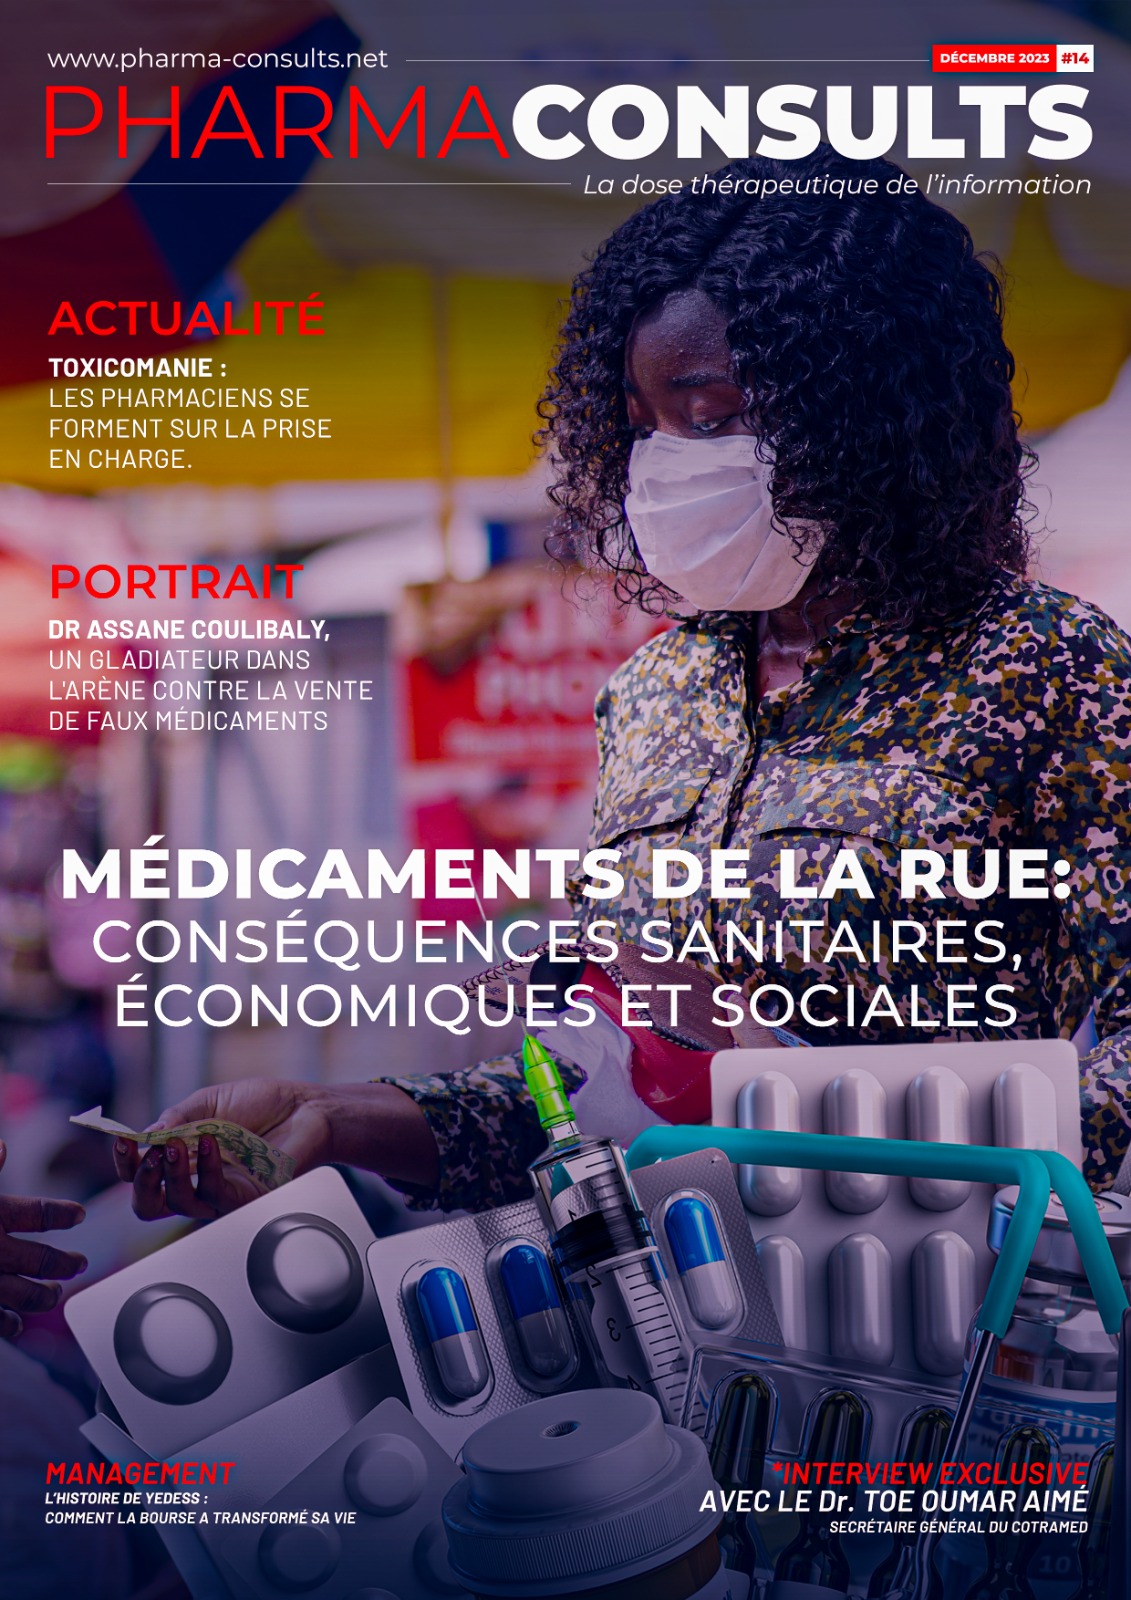 MEDICAMENTS DE LA RUE : Conséquences sanitaires, économiques et sociales